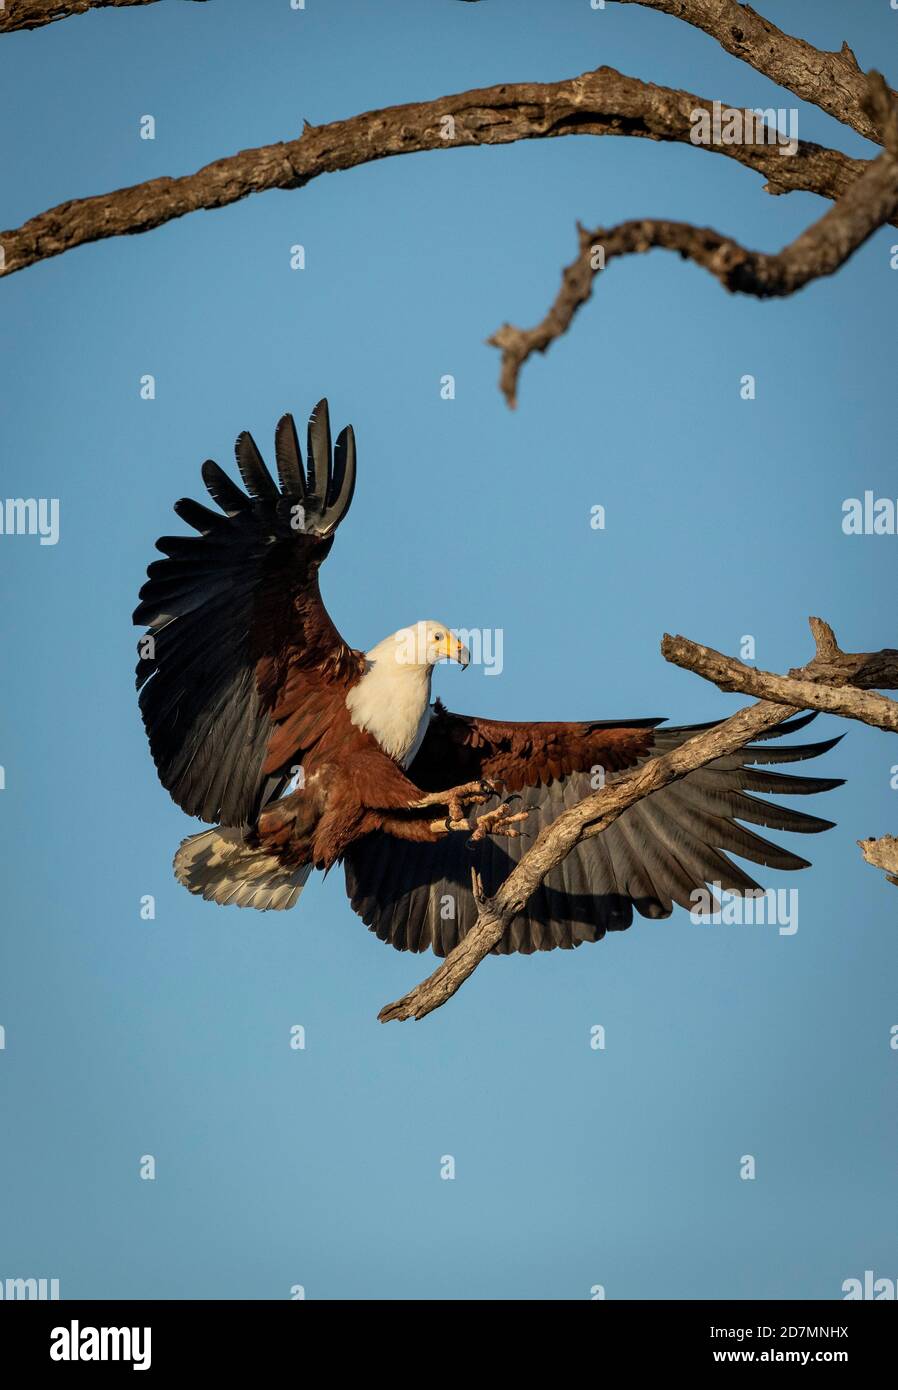 Retrato vertical de un águila pescadora africana adulta que aterriza un árbol con sus alas abiertas con el cielo azul El fondo en el Parque Kruger en Sudáfrica Foto de stock